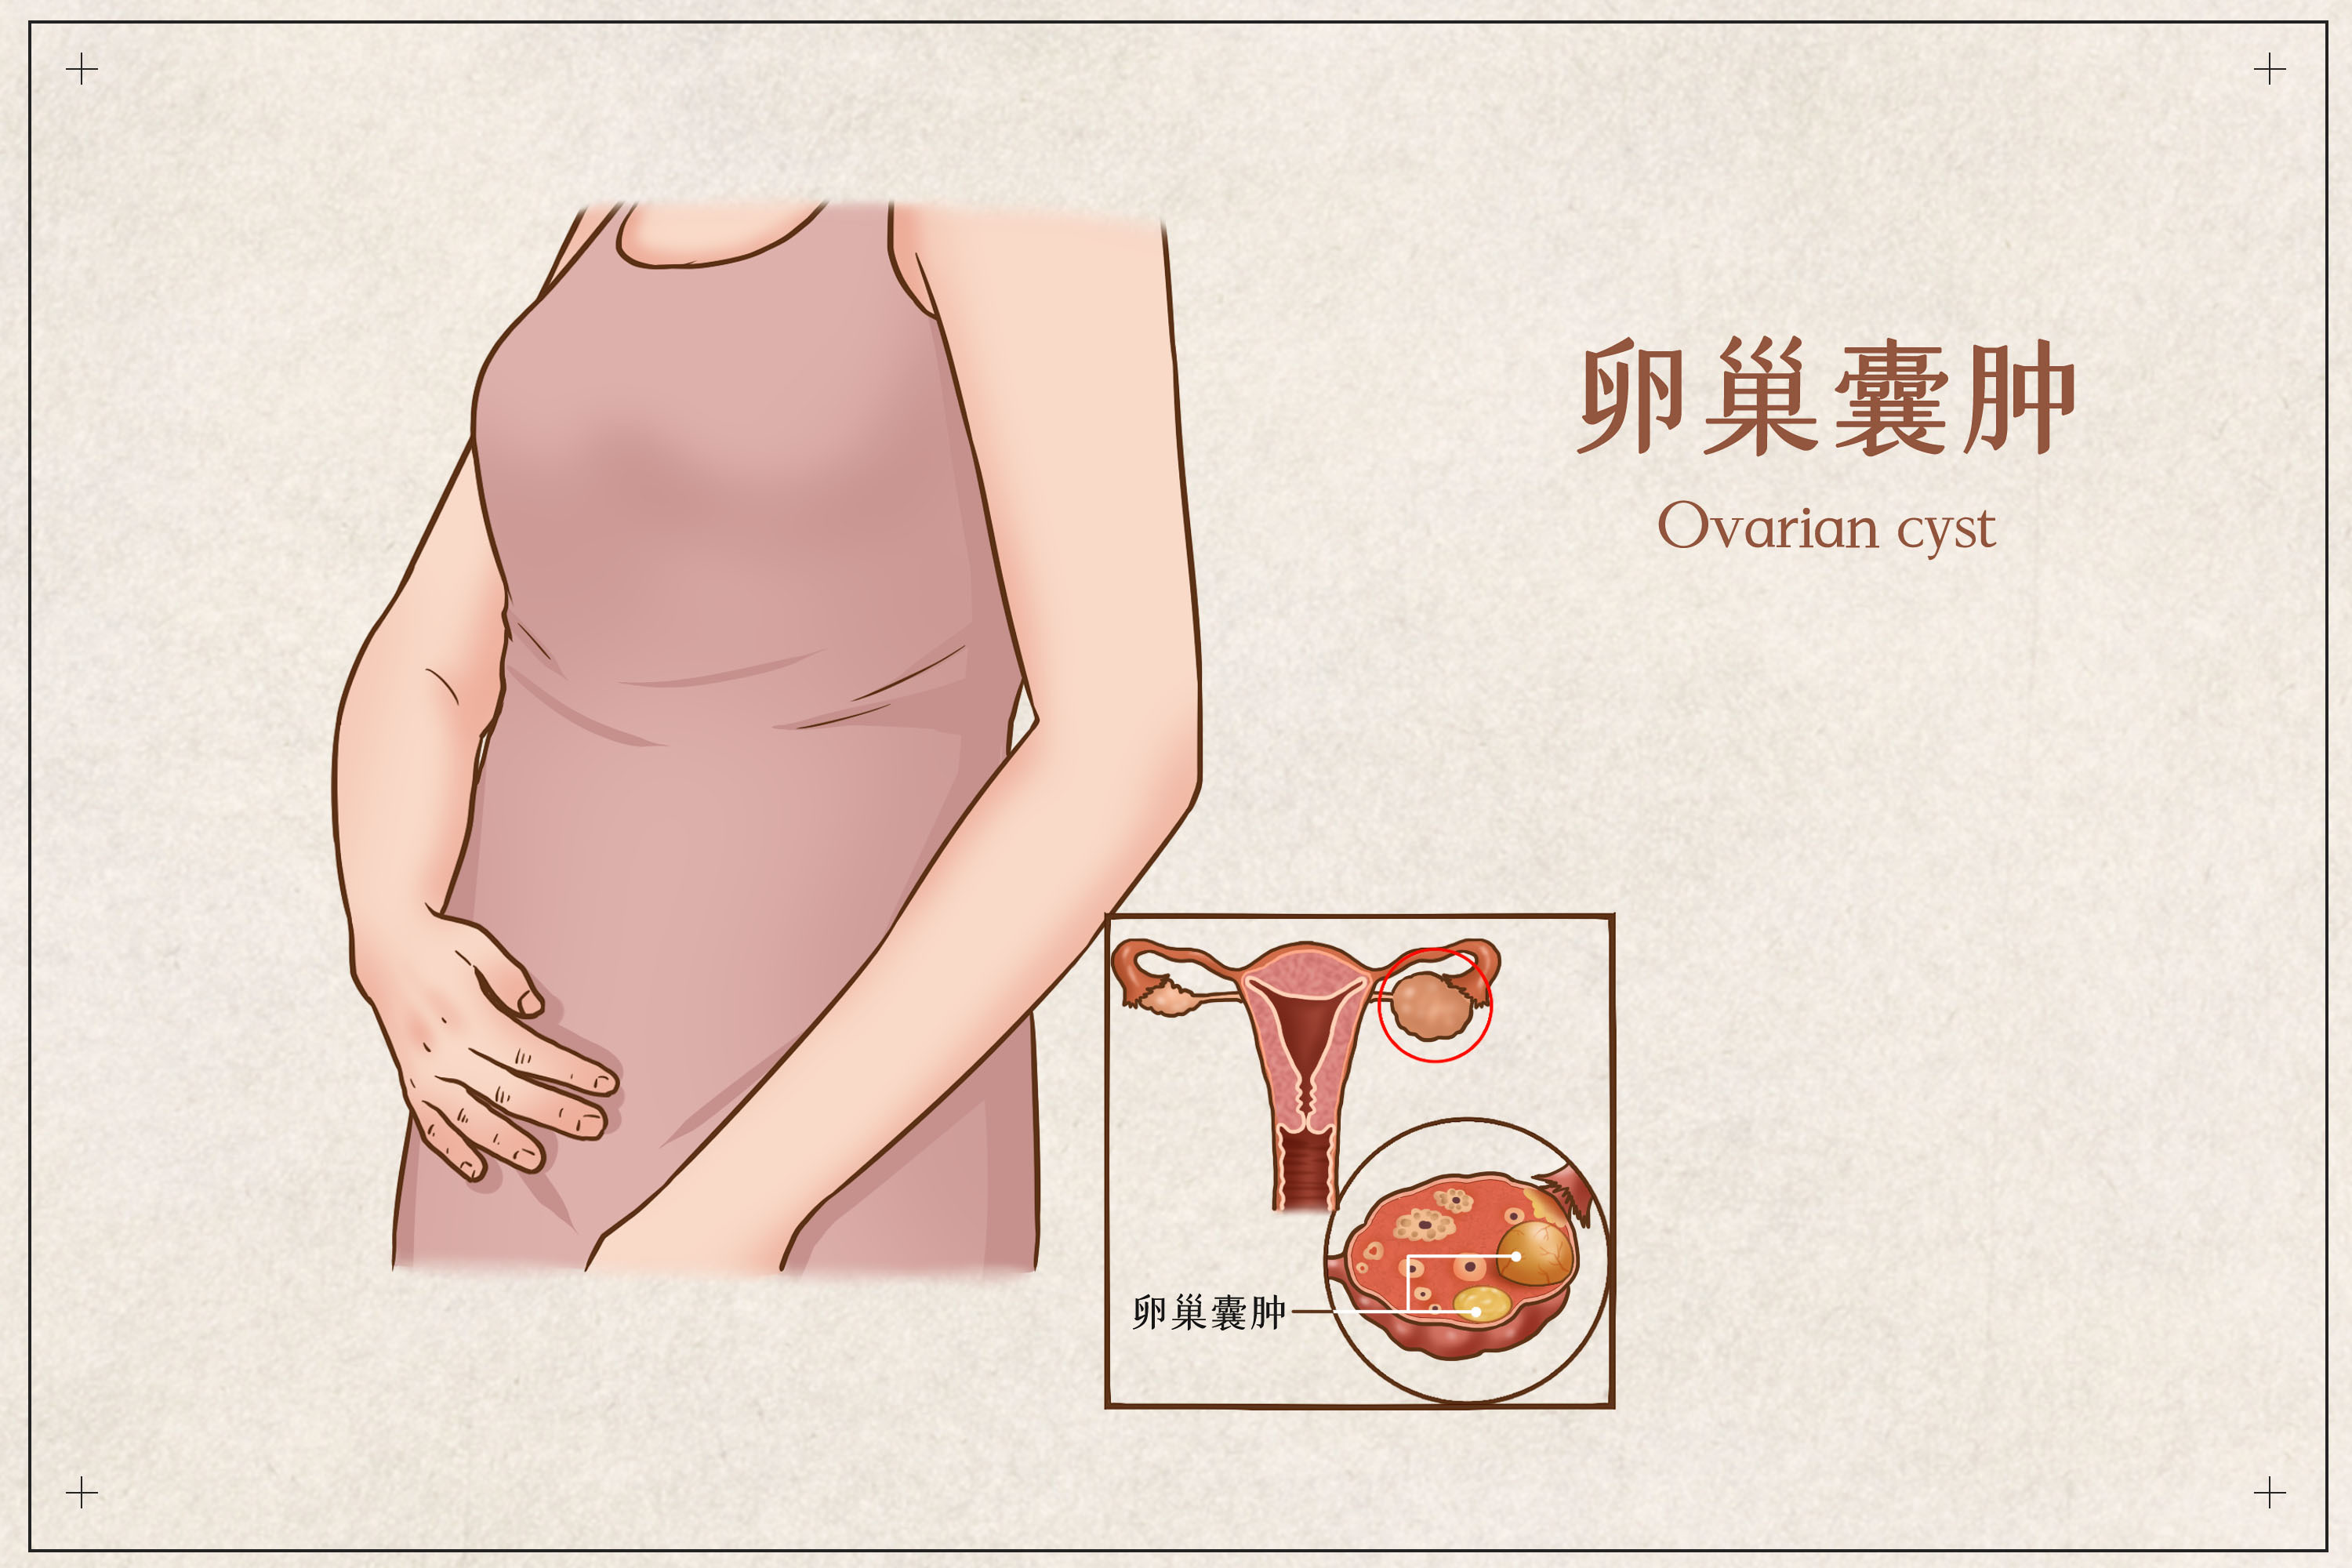 卵巢囊肿的症状有哪些？如何治疗？